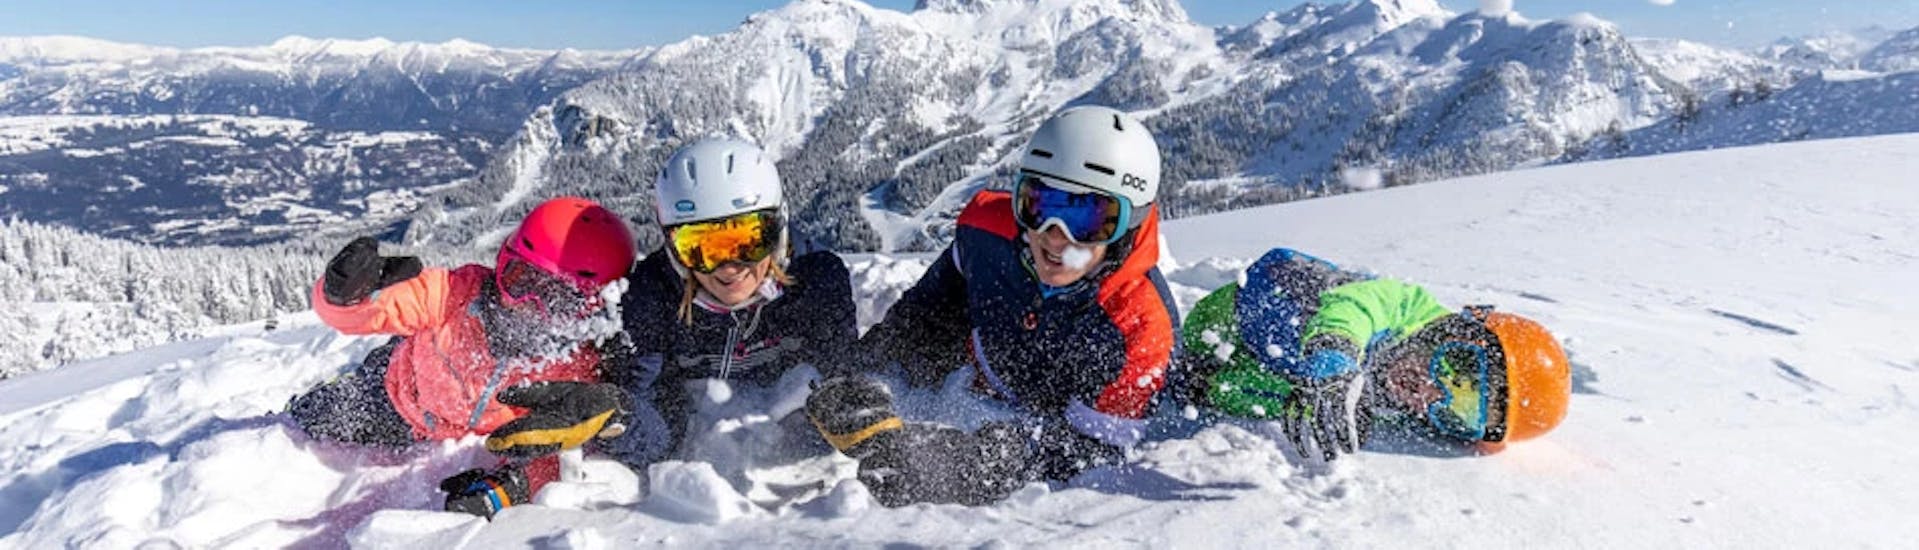 Cours particulier de ski Adultes pour Tous niveaux avec Die Skischule.at Nassfeld.